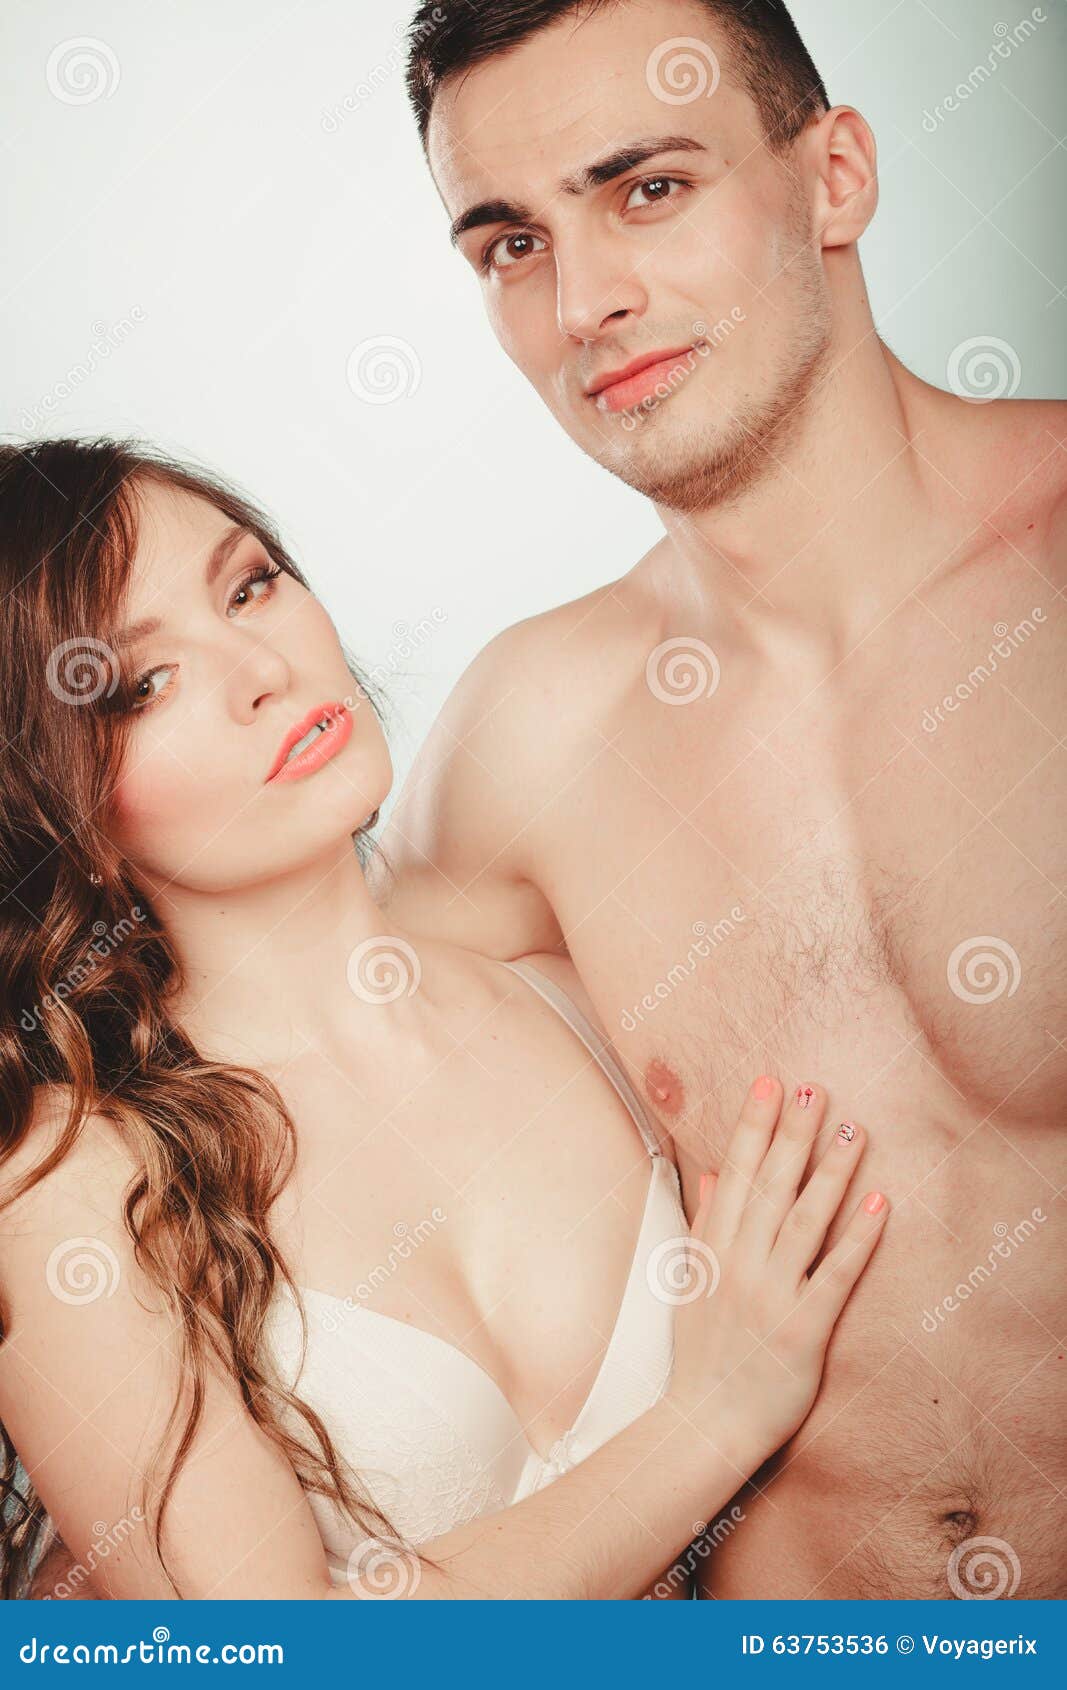 Pretty nude couples pics